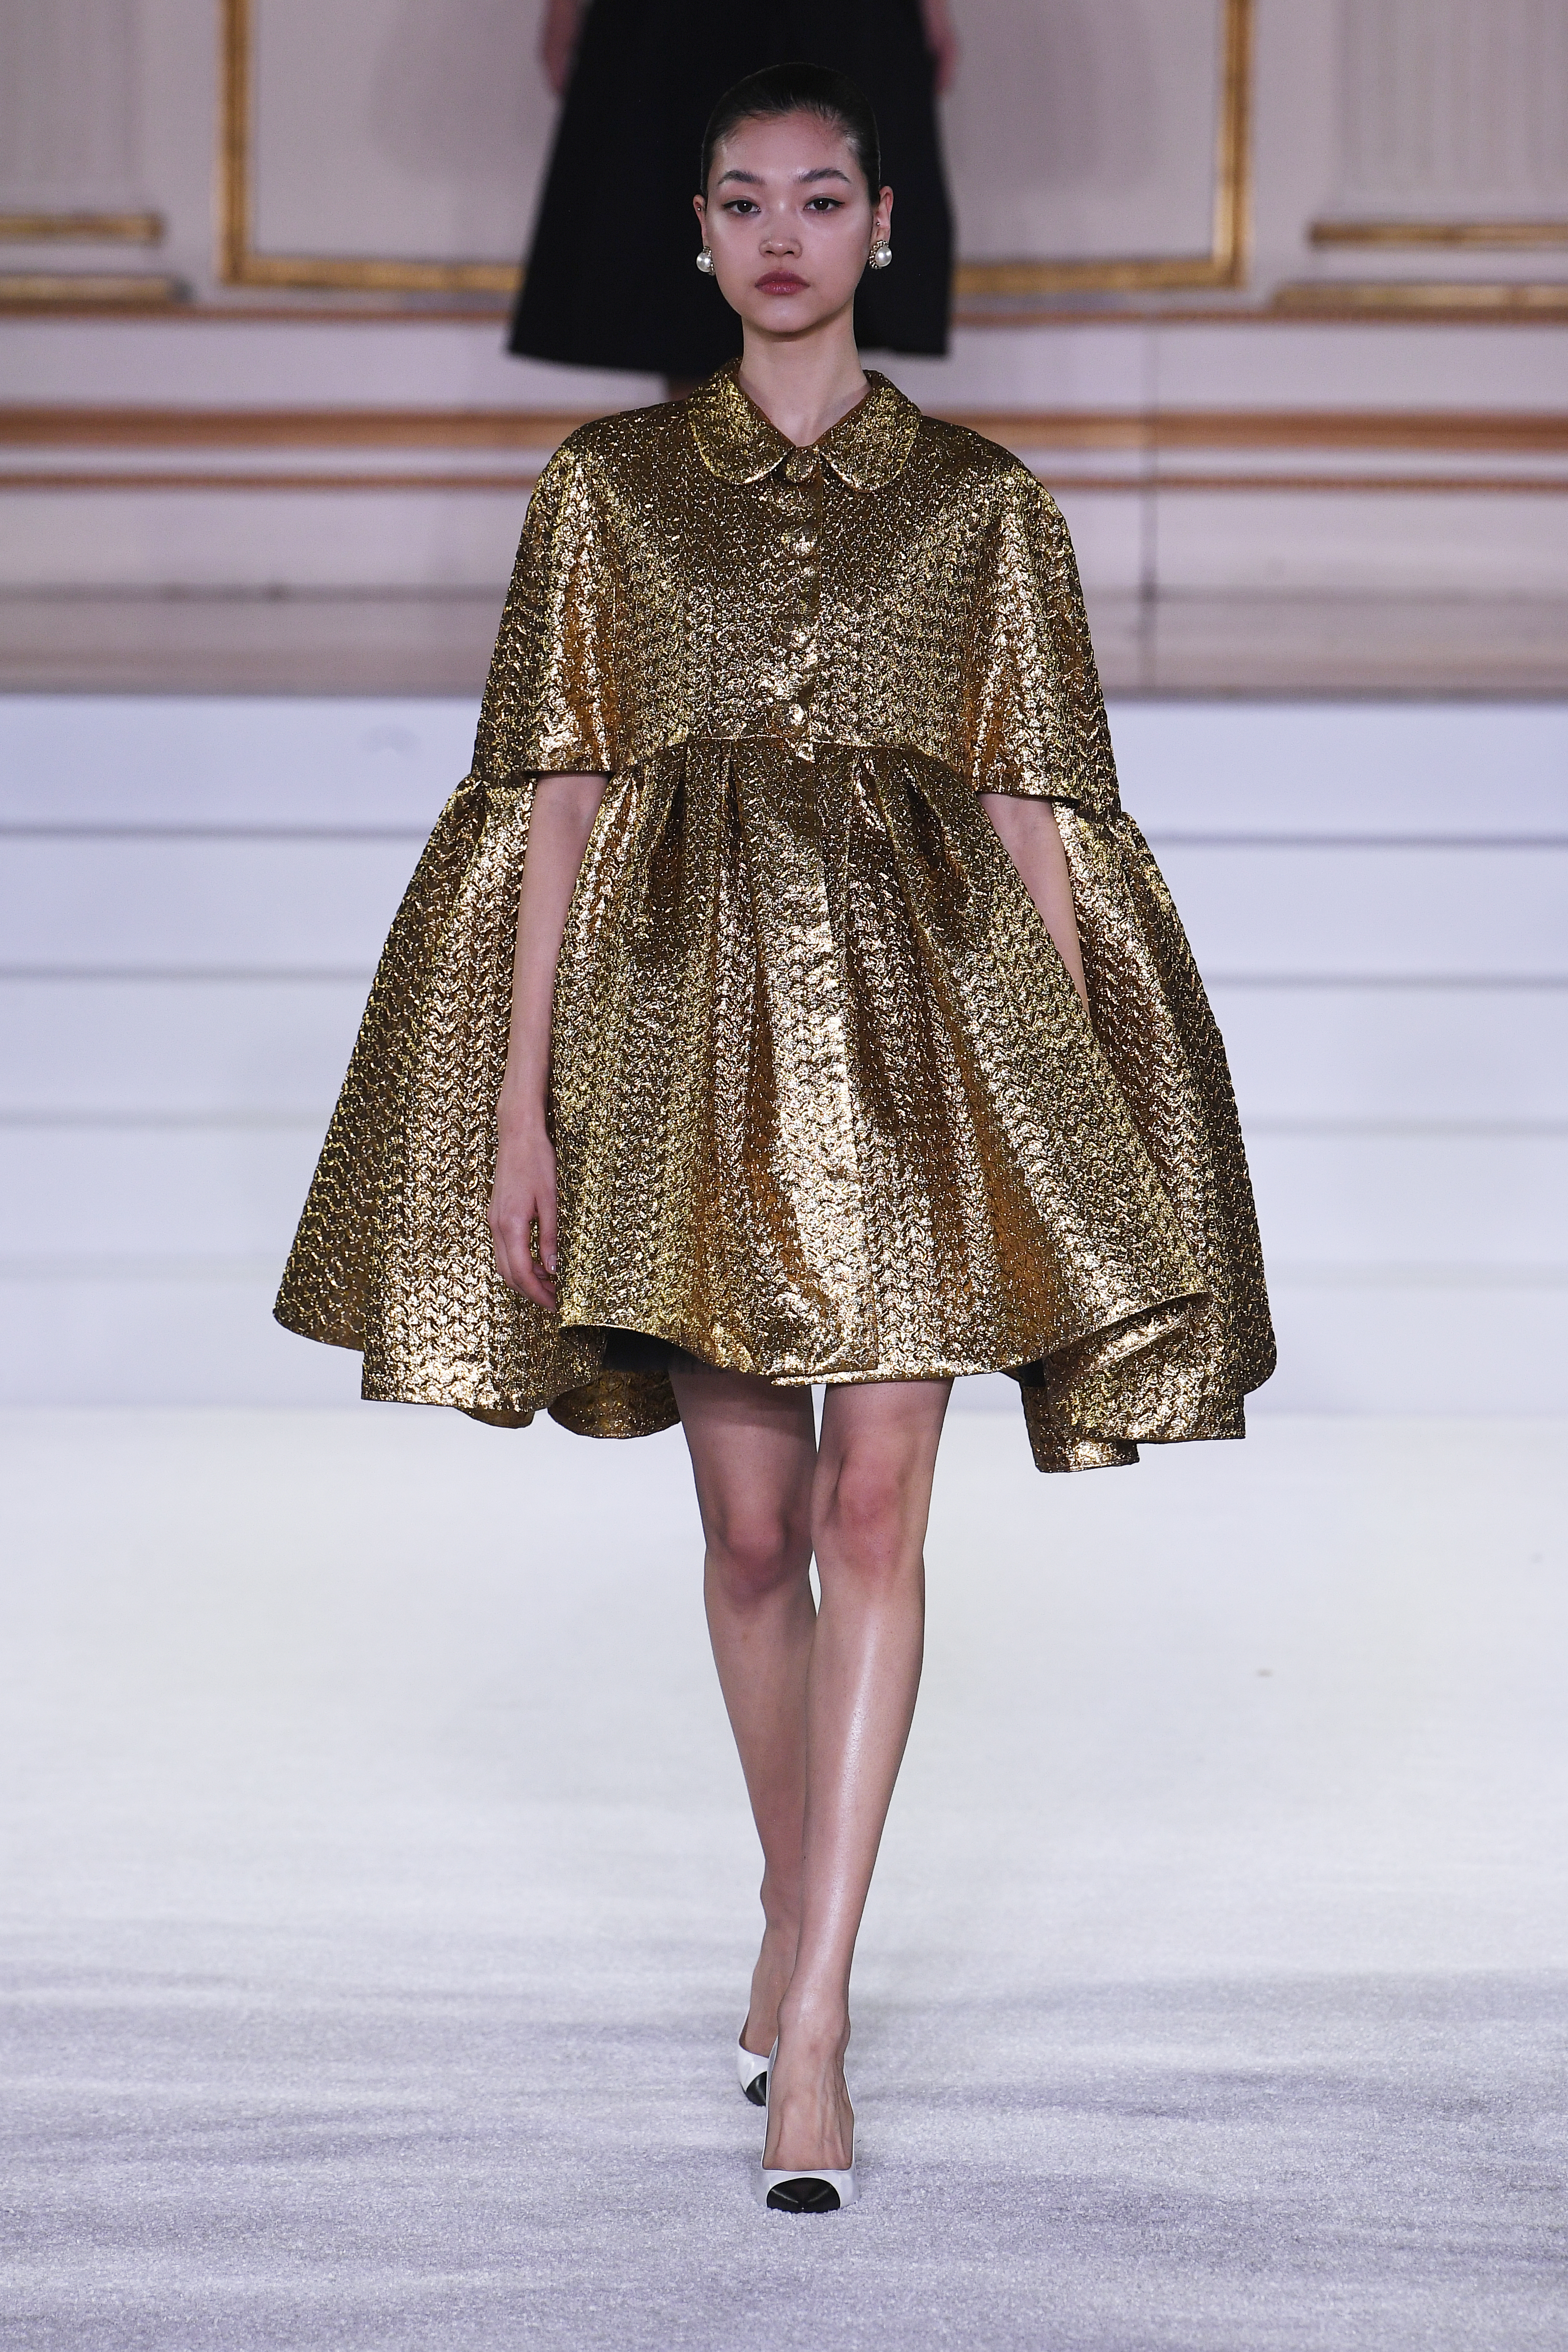 Desfile de outono-inverno 2023 da Carolina Herrera na semana de moda de Nova York. Modelo usando vestido volumoso metalizado em dourado